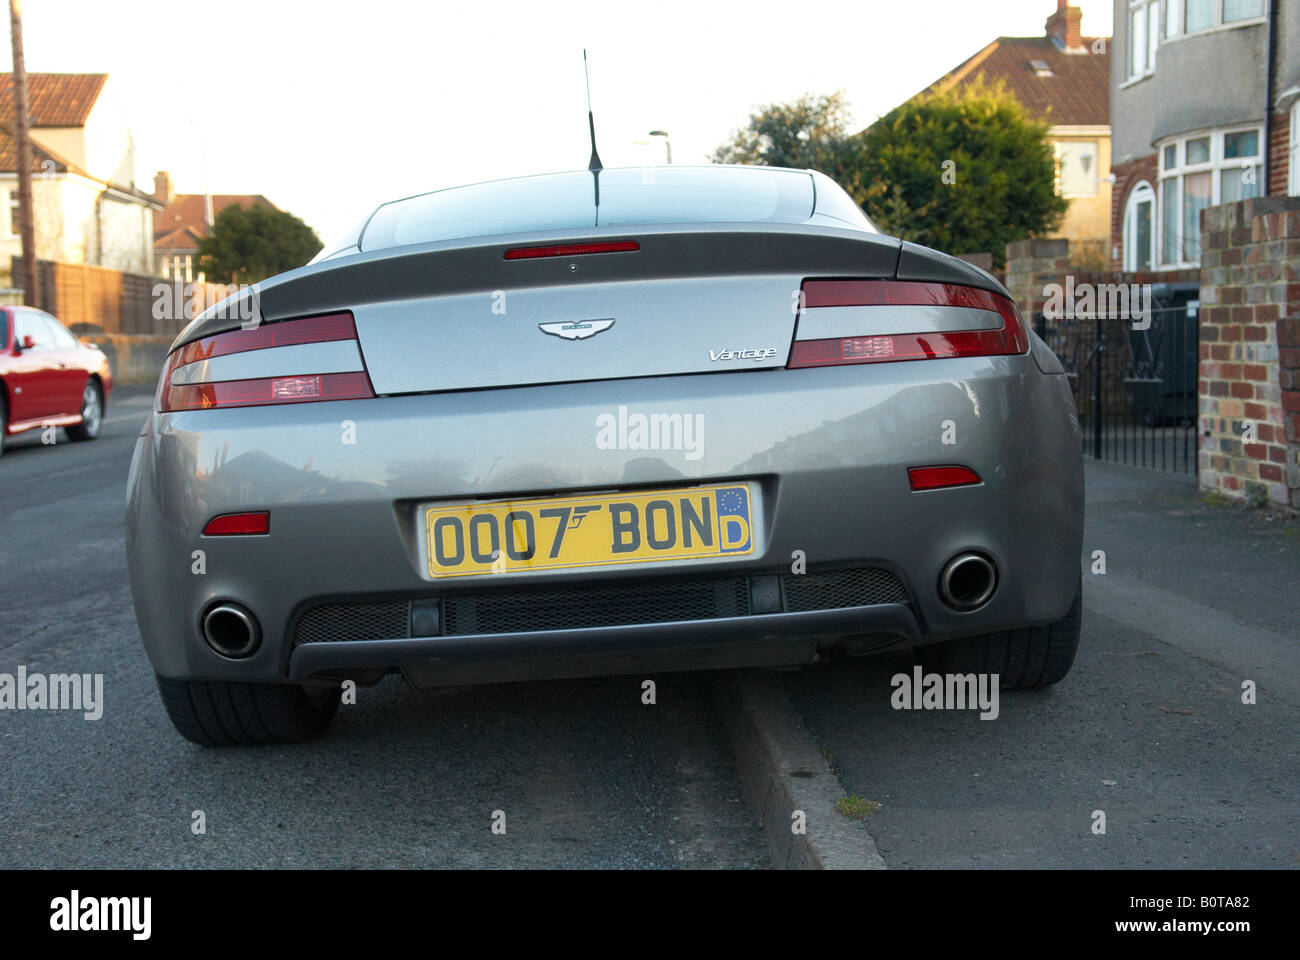 Aston Martin Vantage 007 Bond Wagennummer Platte Stockfoto